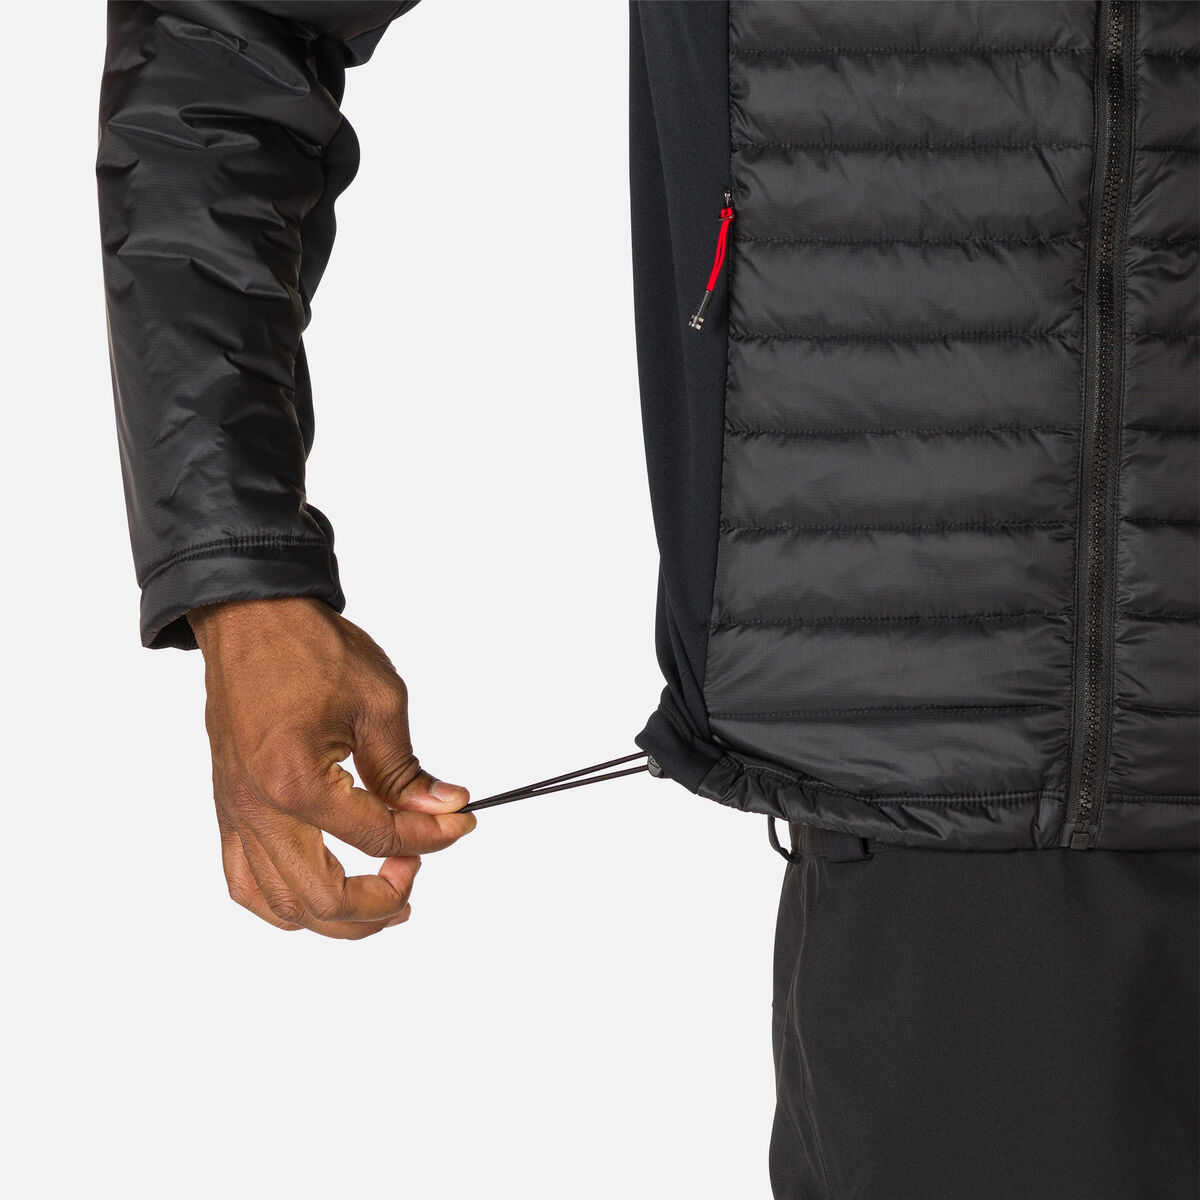 Rossignol Men's SKPR Hybrid Light Jacket black